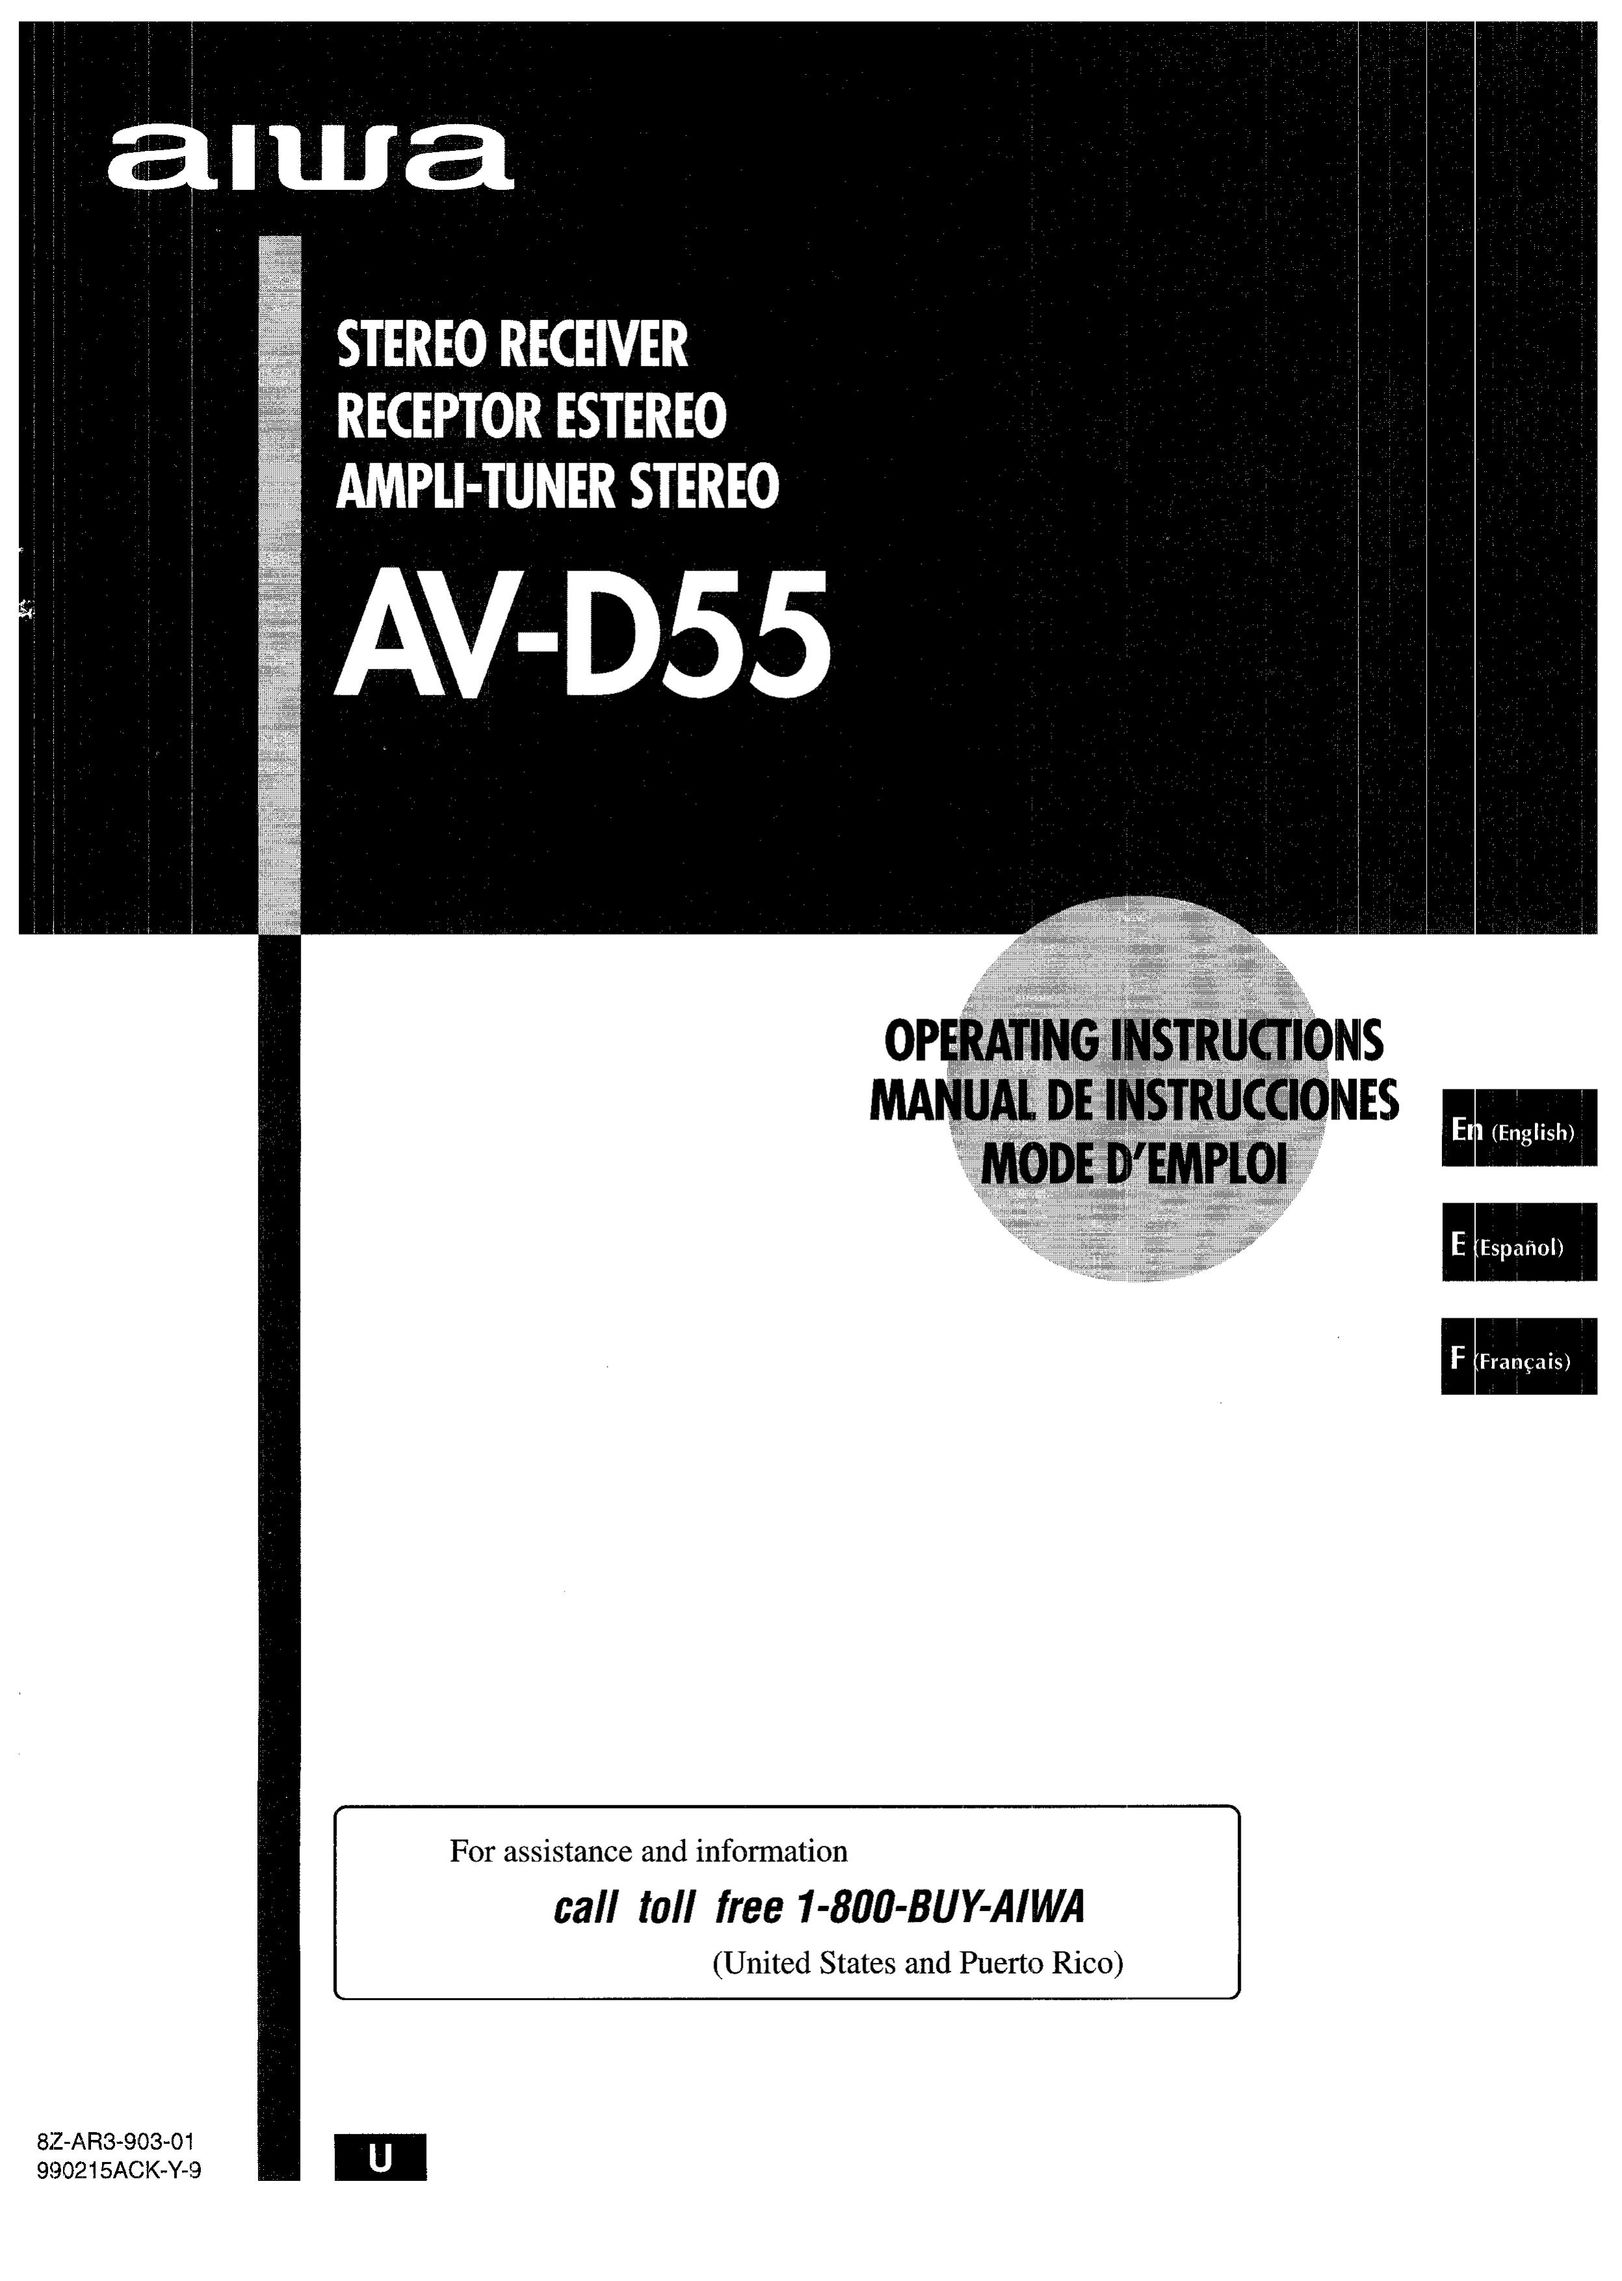 Aiwa AV-D55 Stereo Receiver User Manual